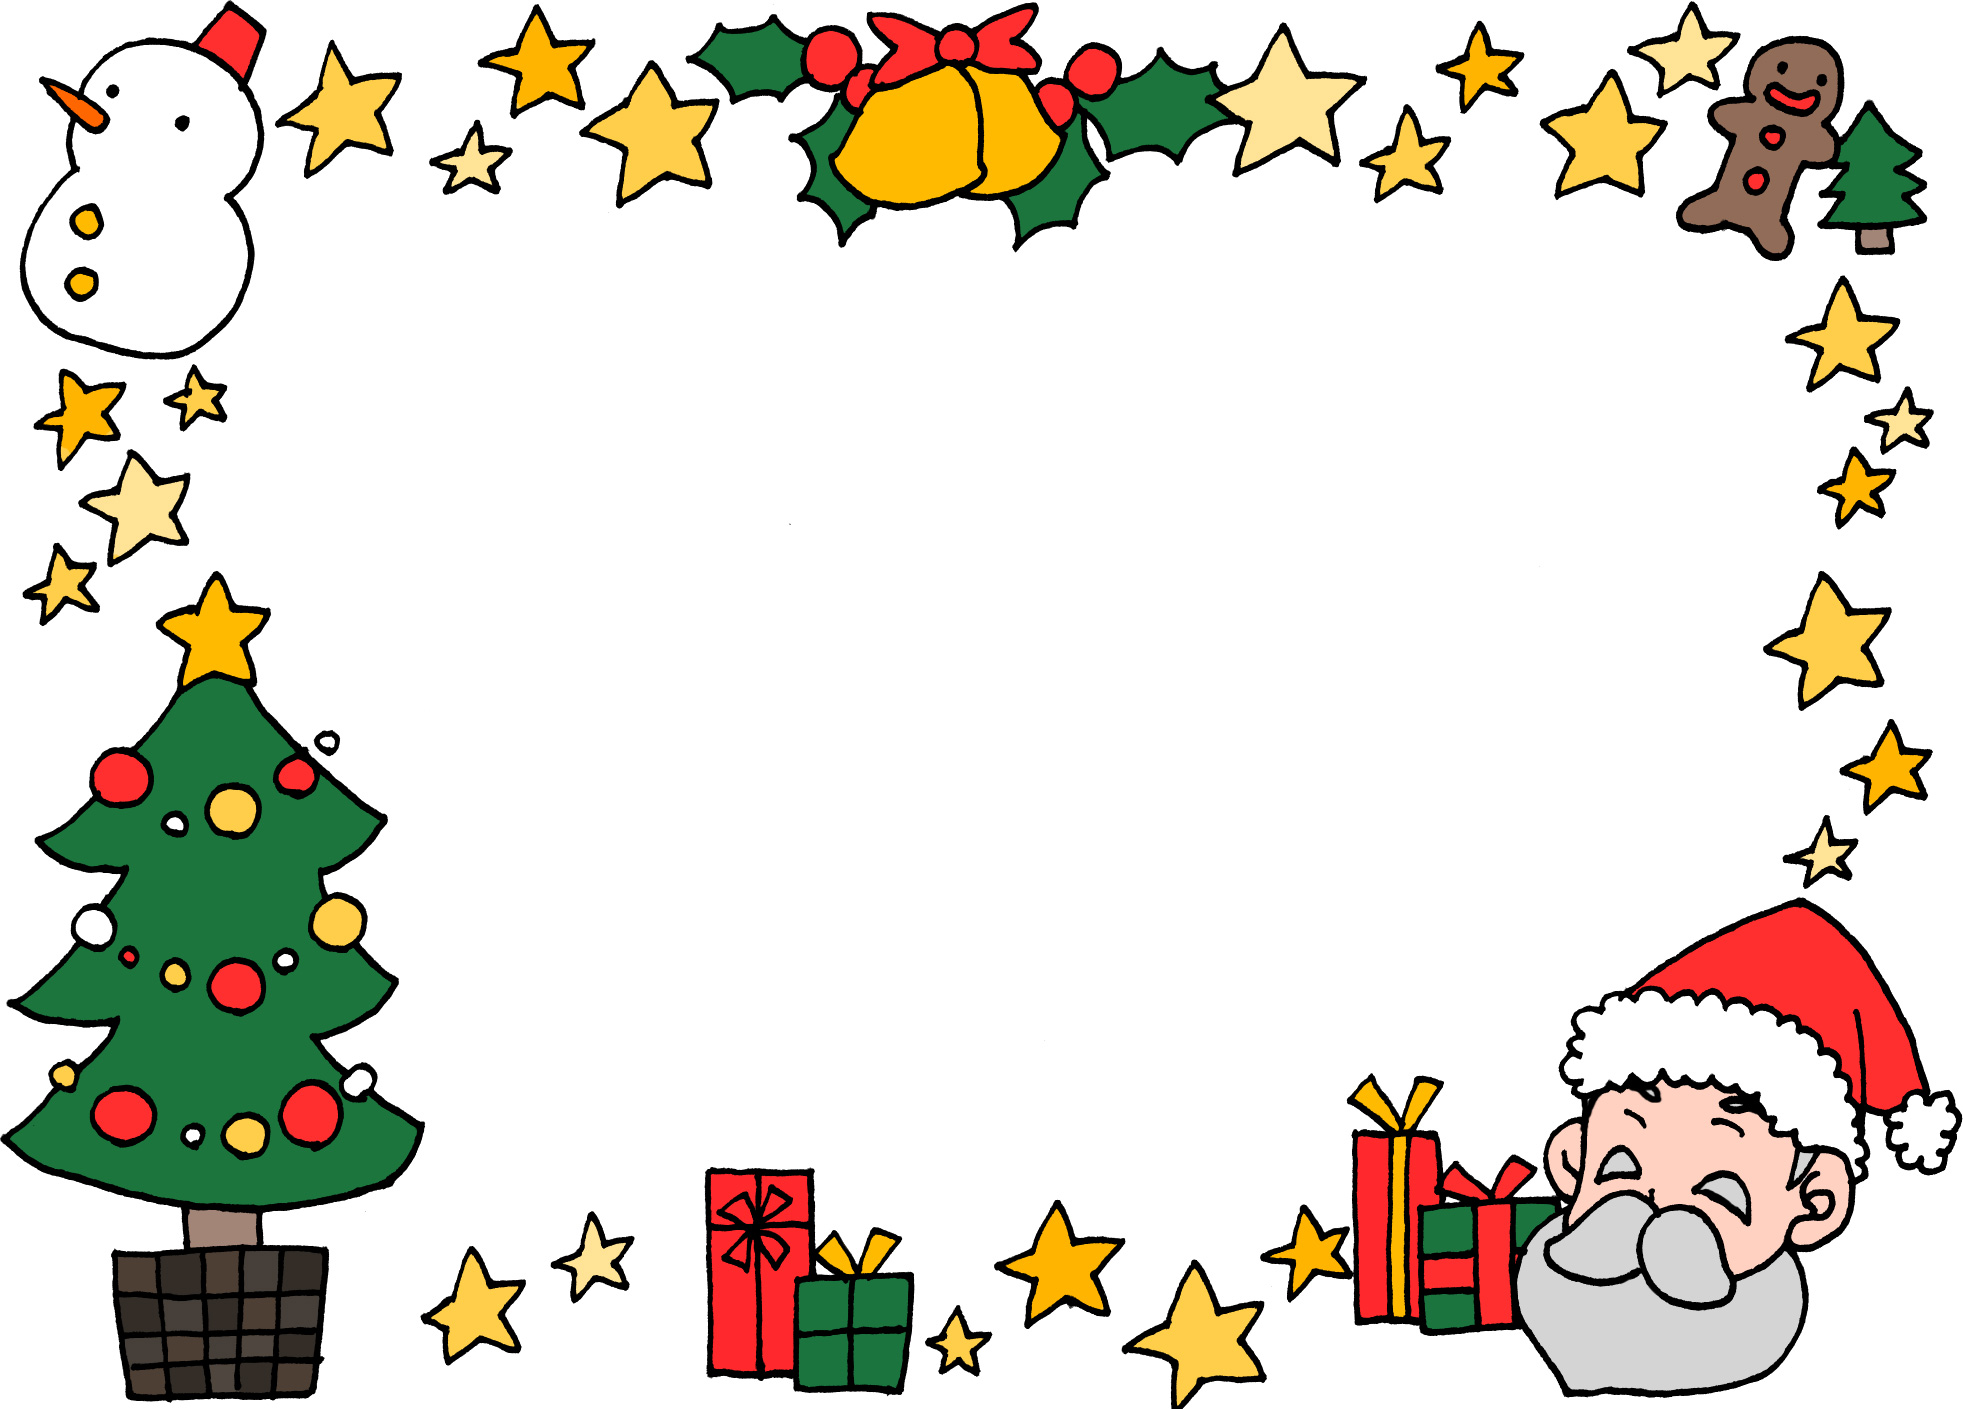 可愛いクリスマス用飾り枠 フレーム手描き無料イラスト素材